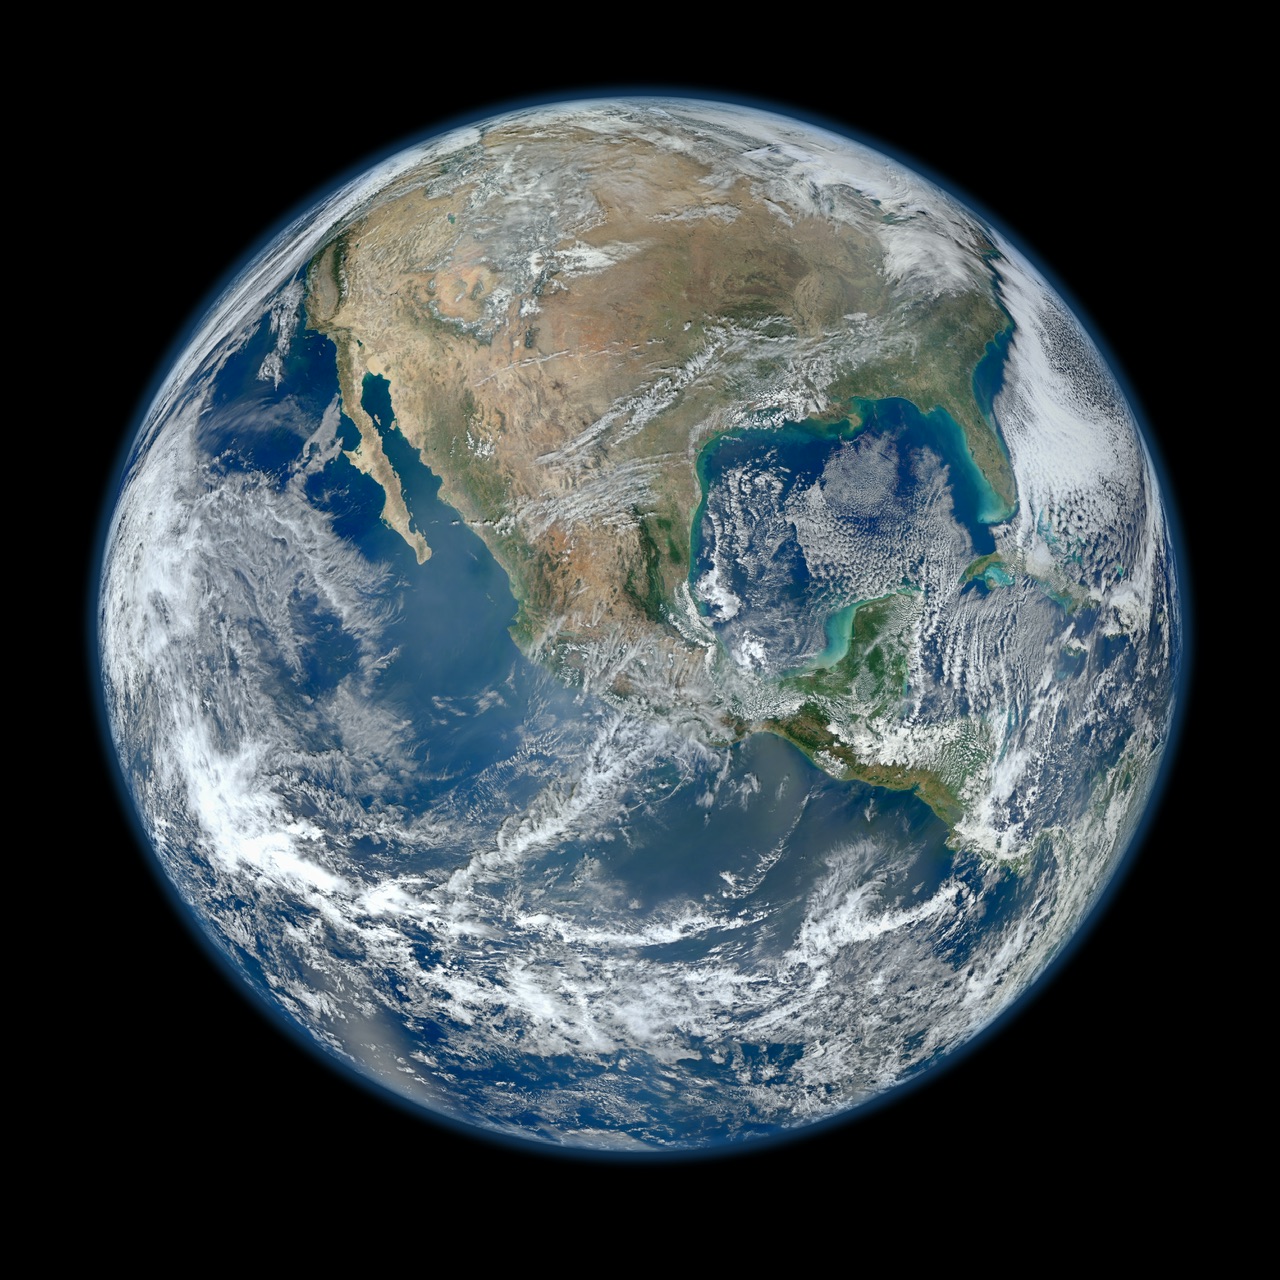 photo from NASA